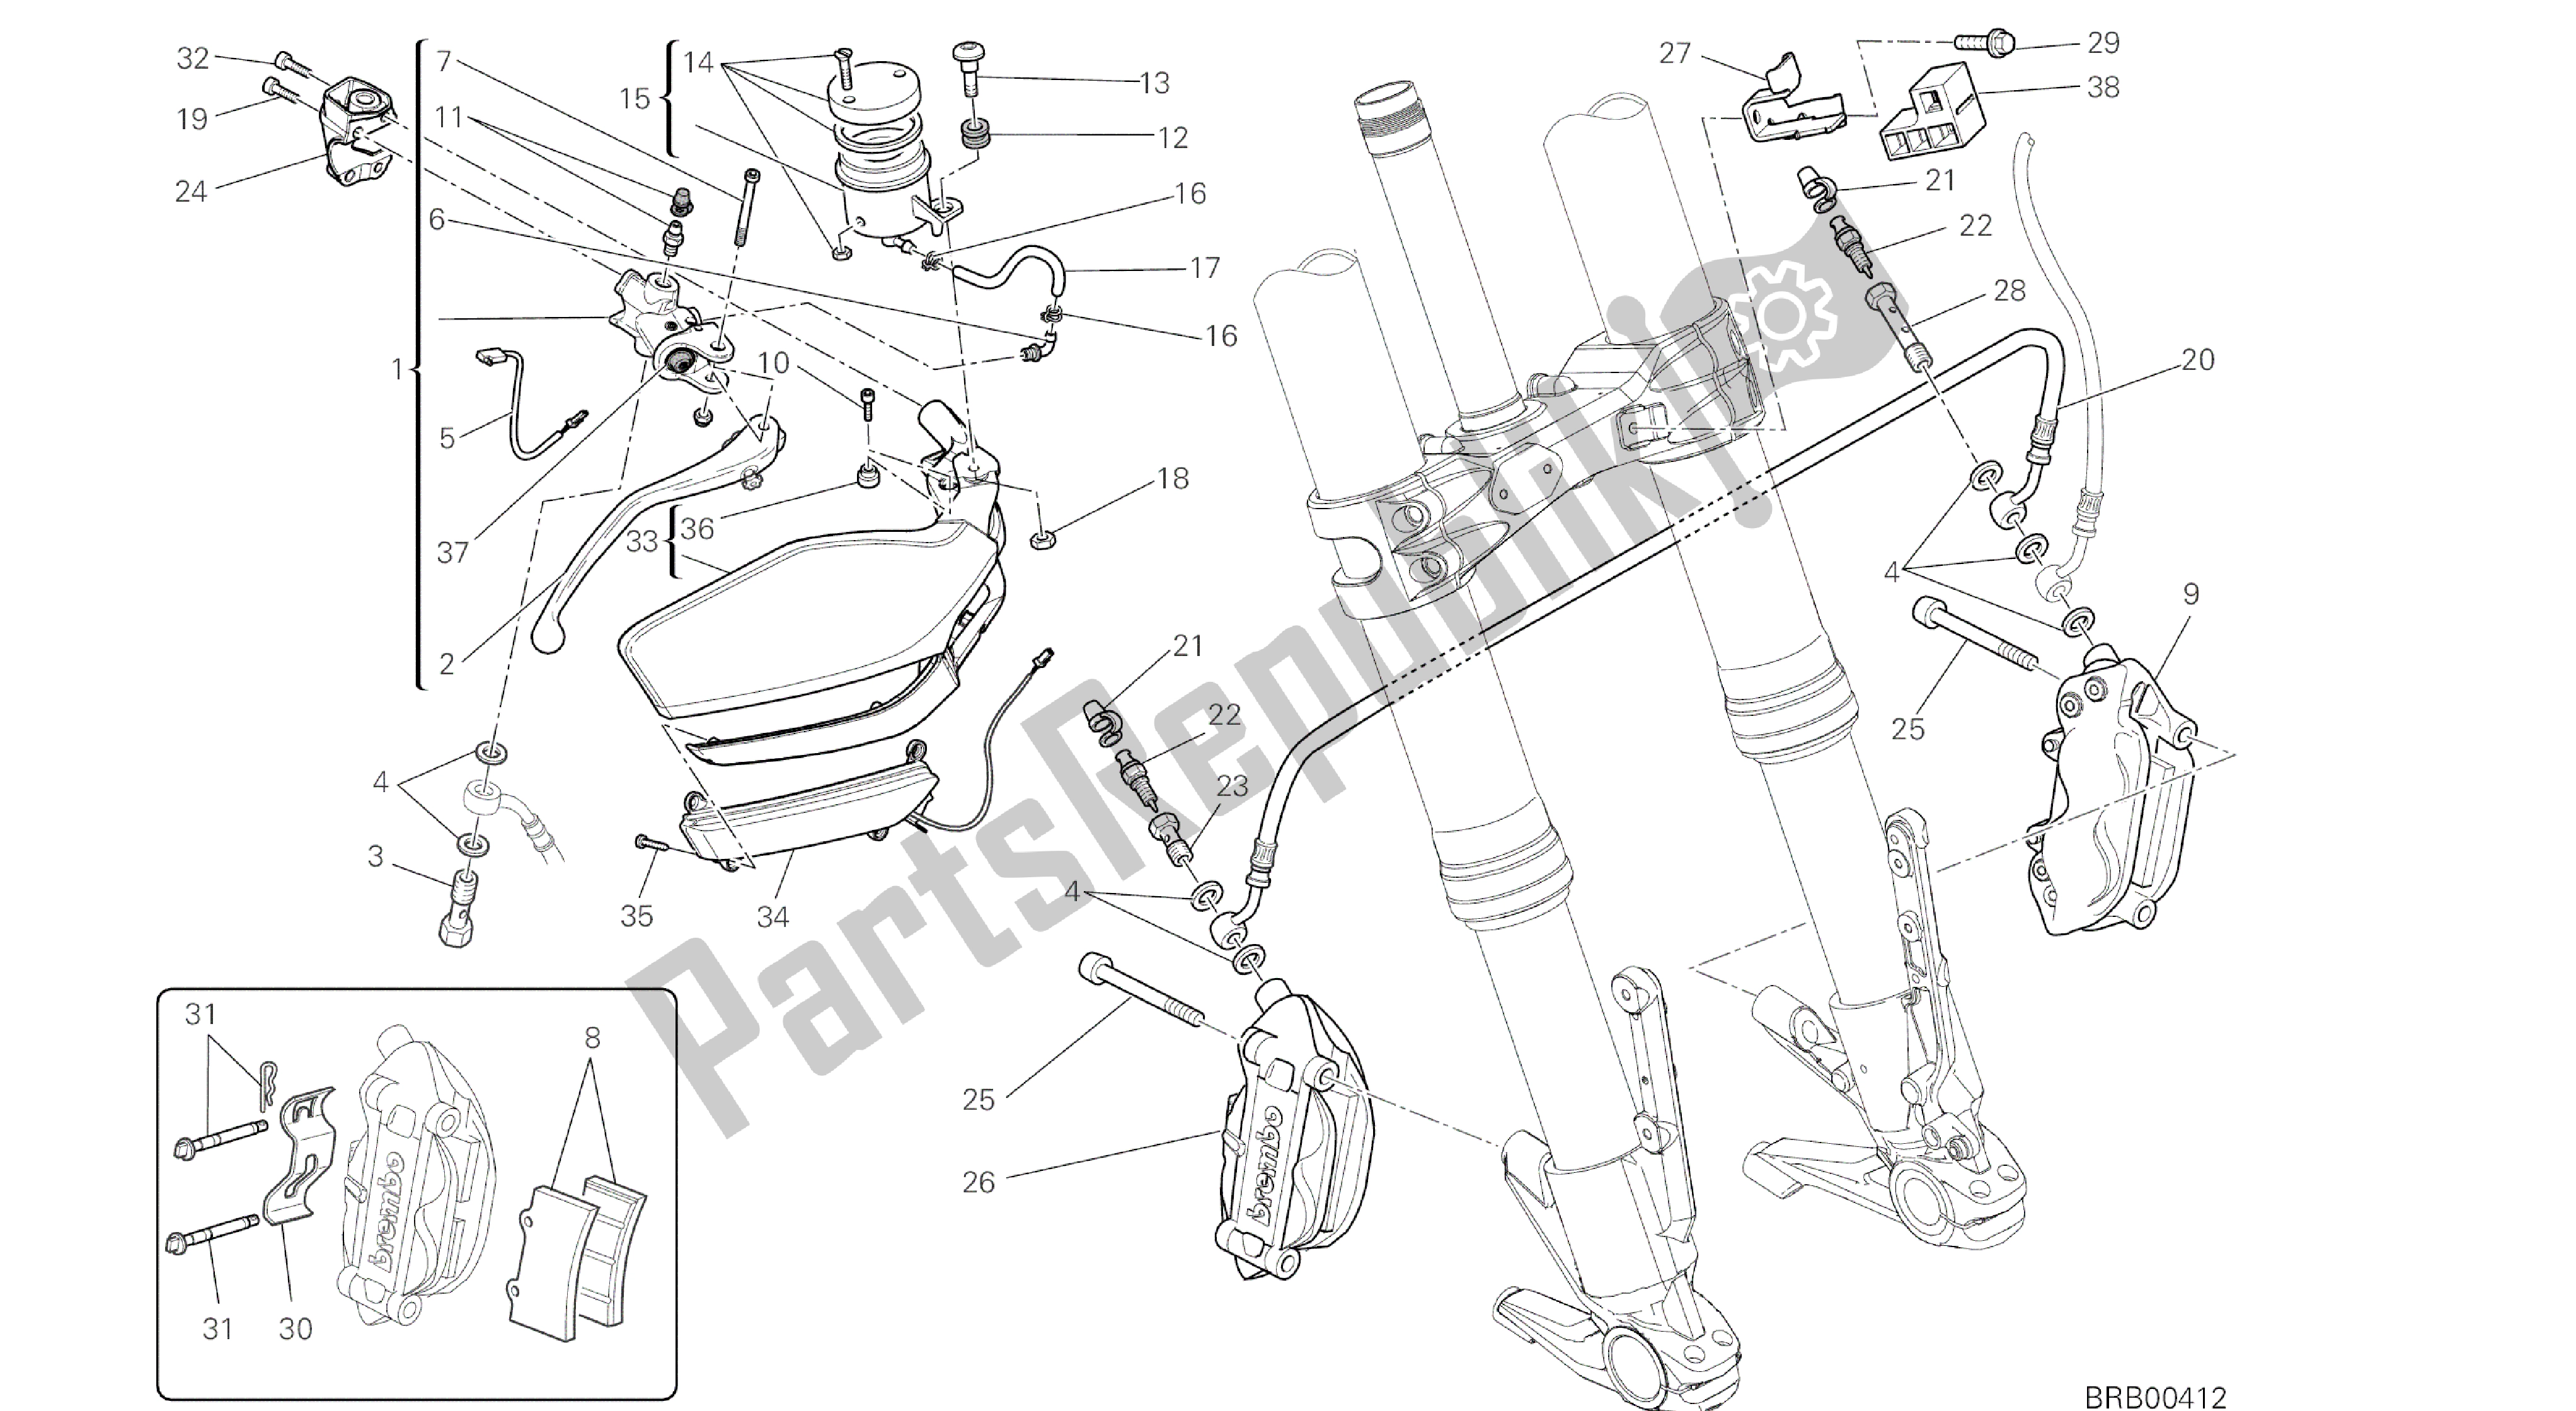 Toutes les pièces pour le Dessin 024 - Système De Freinage Avant [mod: Ms1200st; Xst: Aus, Chn, Eur, Fra, Jap, Tha] Cadre De Groupe du Ducati Multistrada S Touring 1200 2014